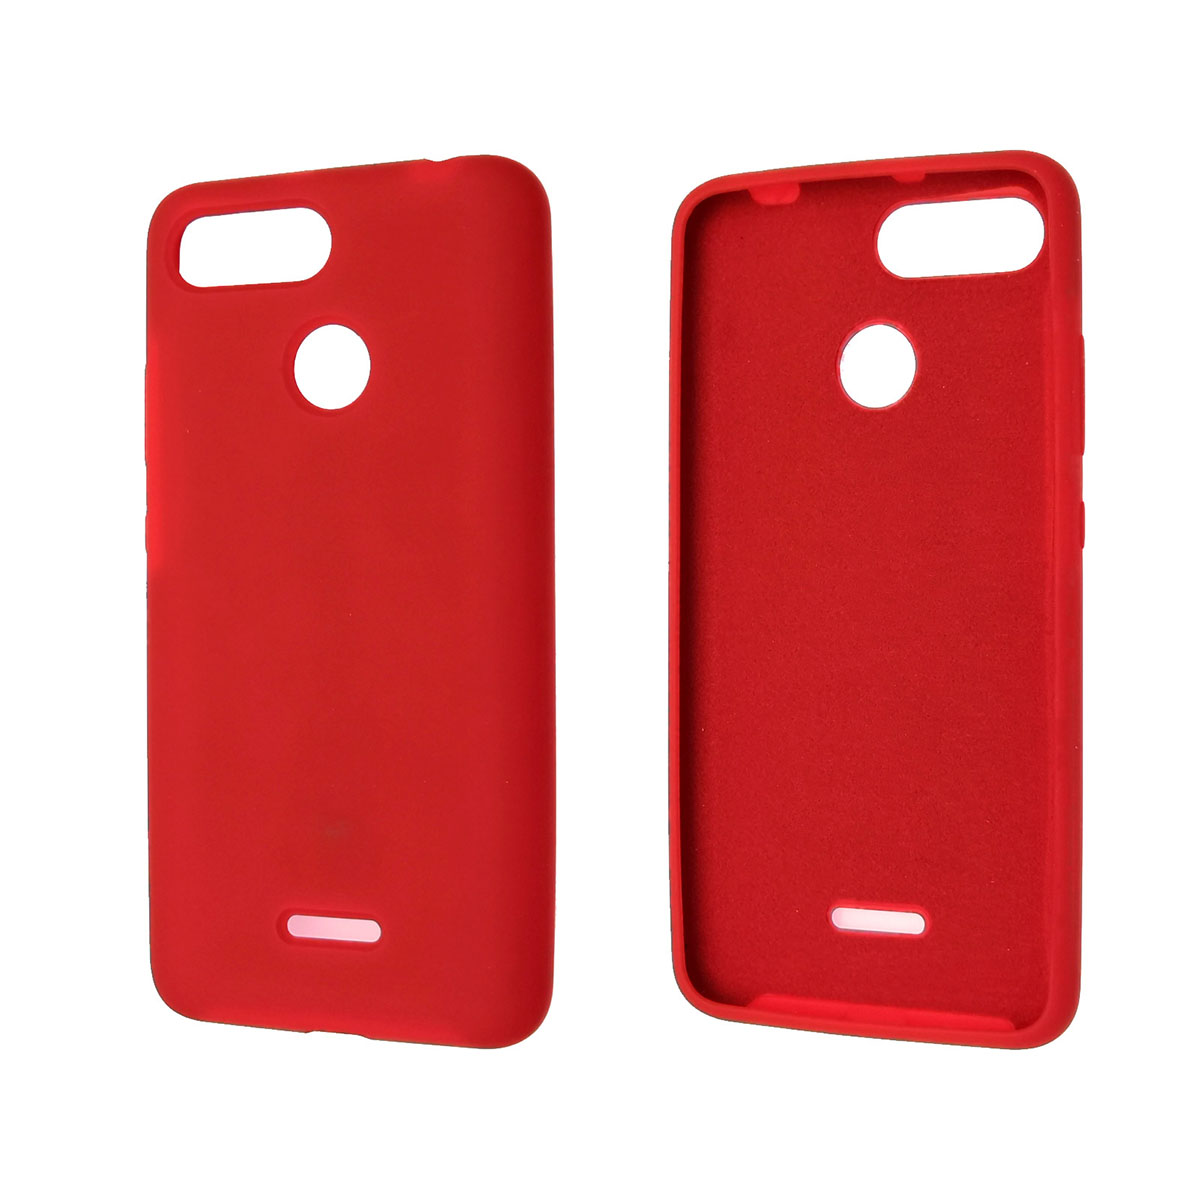 Чехол накладка Silicon Cover для XIAOMI Redmi 6, силикон, бархат, цвет красный.